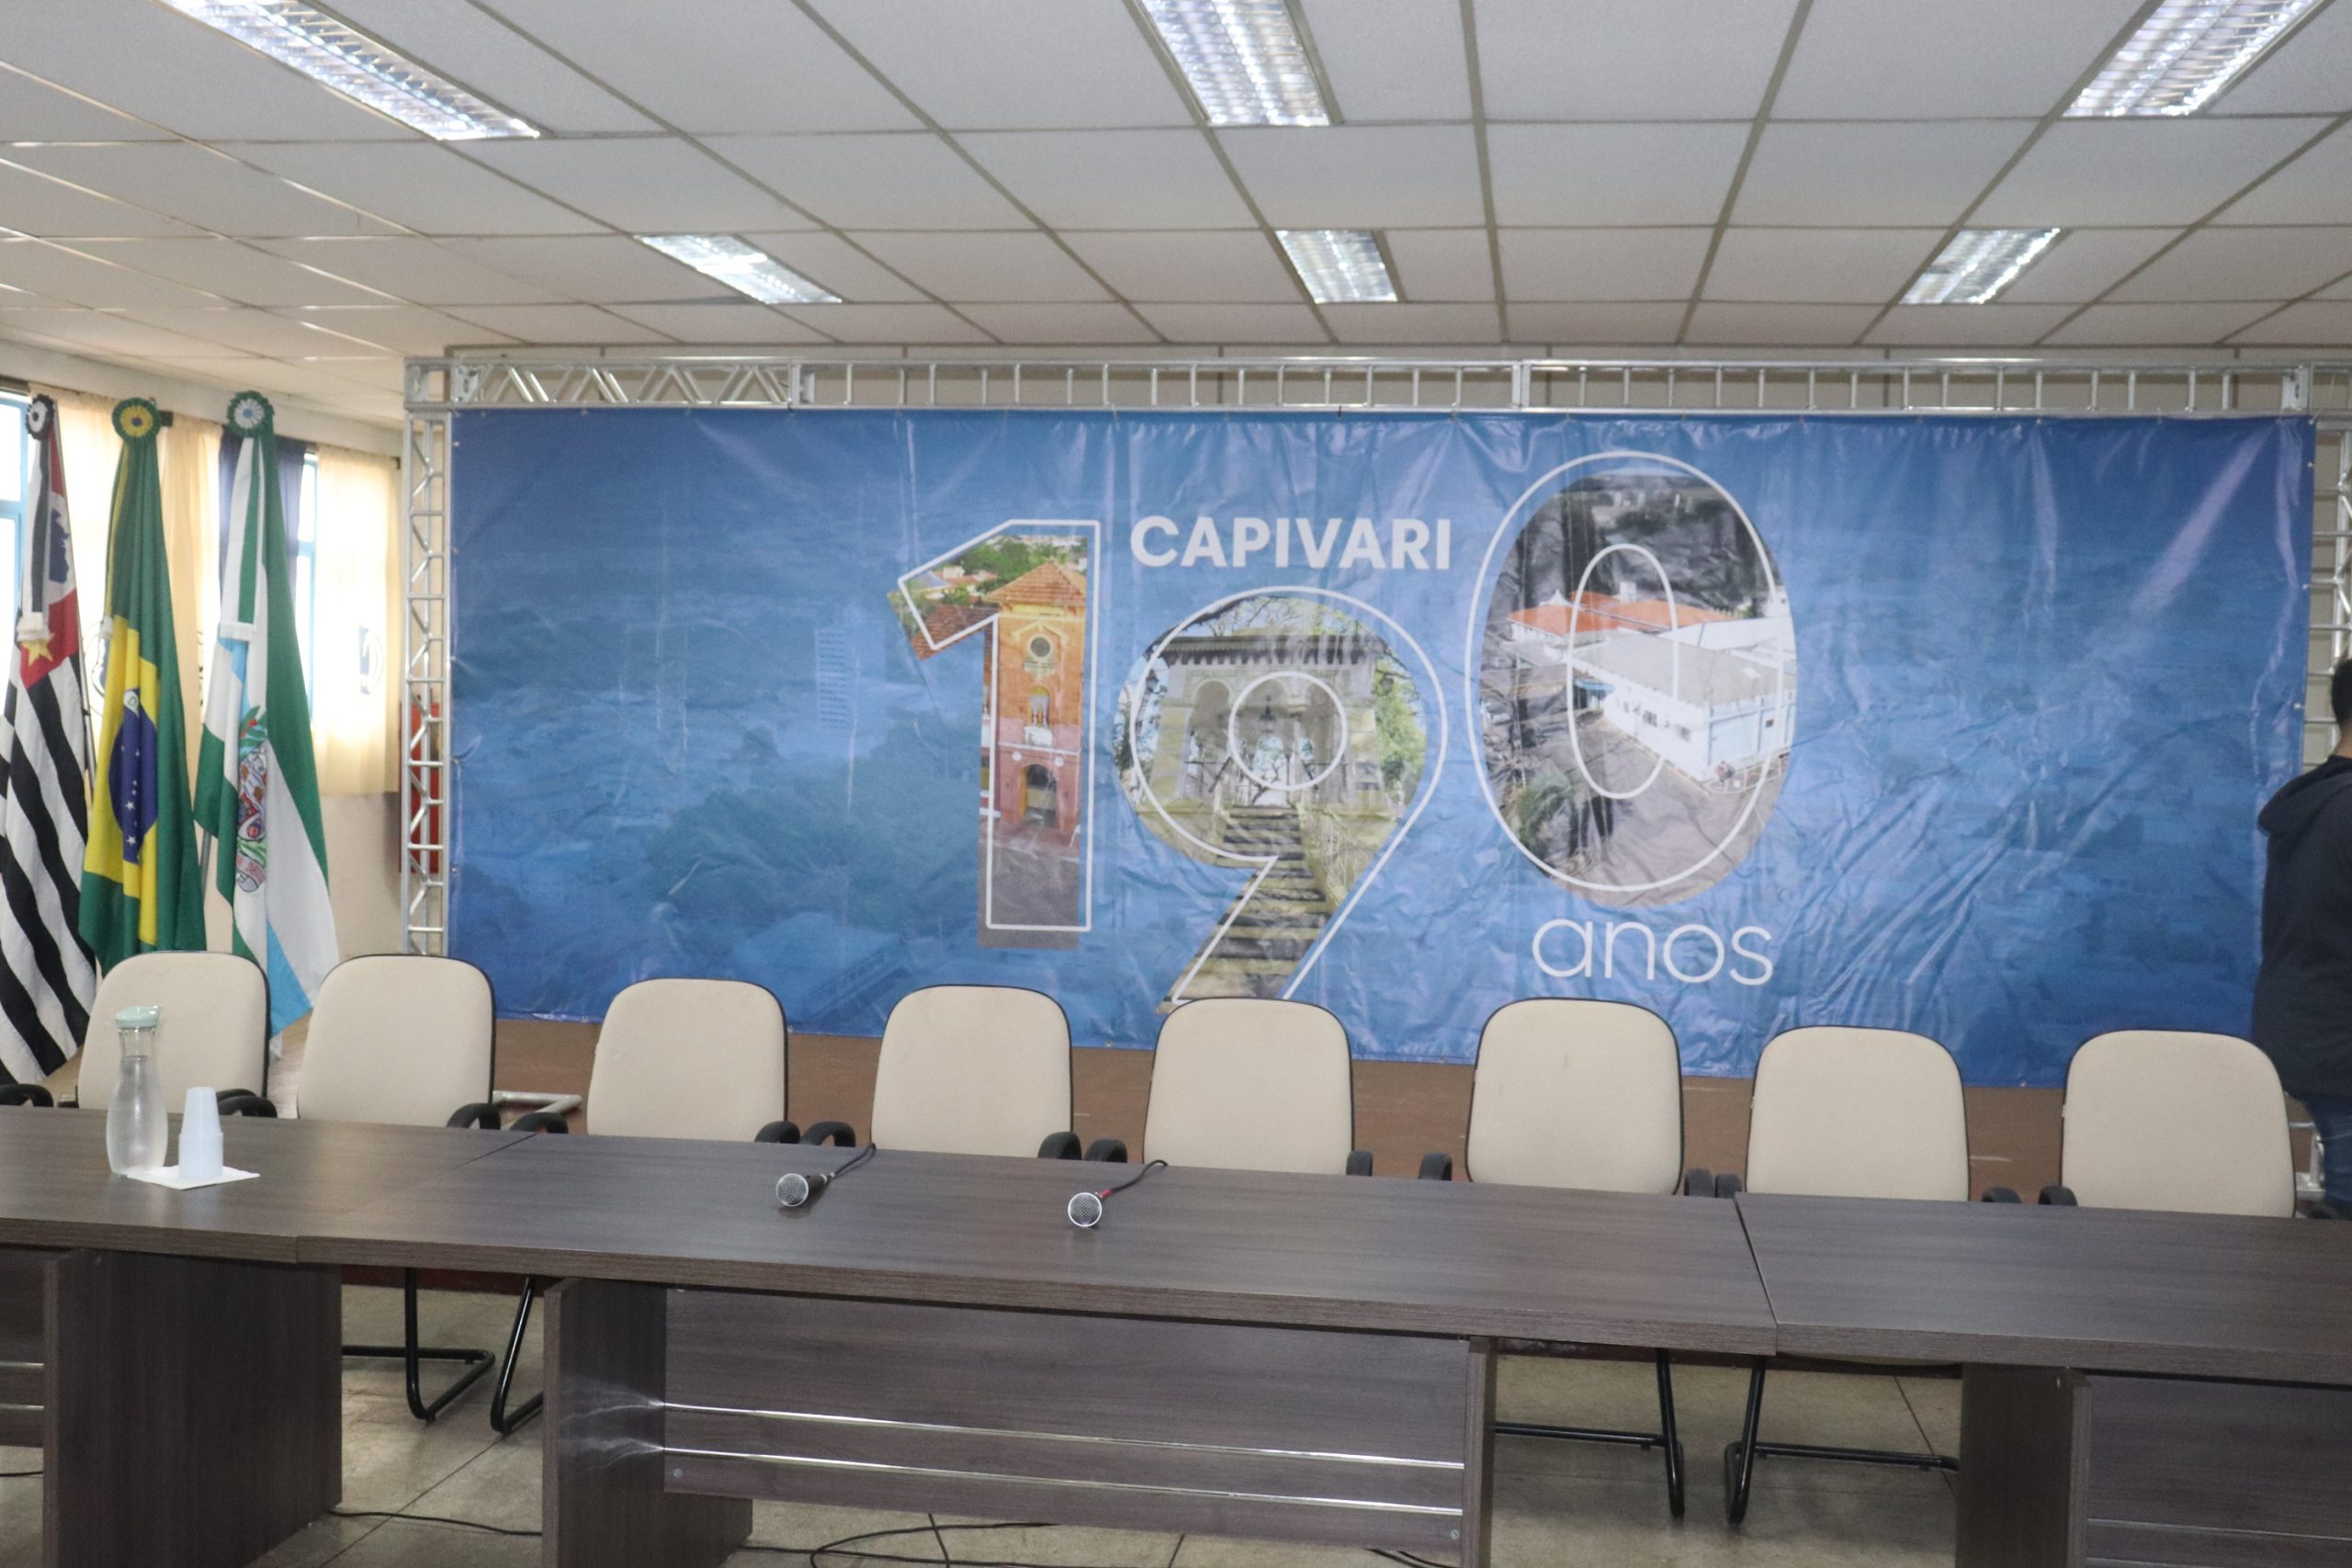 Prefeito e Vice-Prefeito apresentam aos vereadores Projeto de Mobilidade Urbana e Desenvolvimento para Capivari